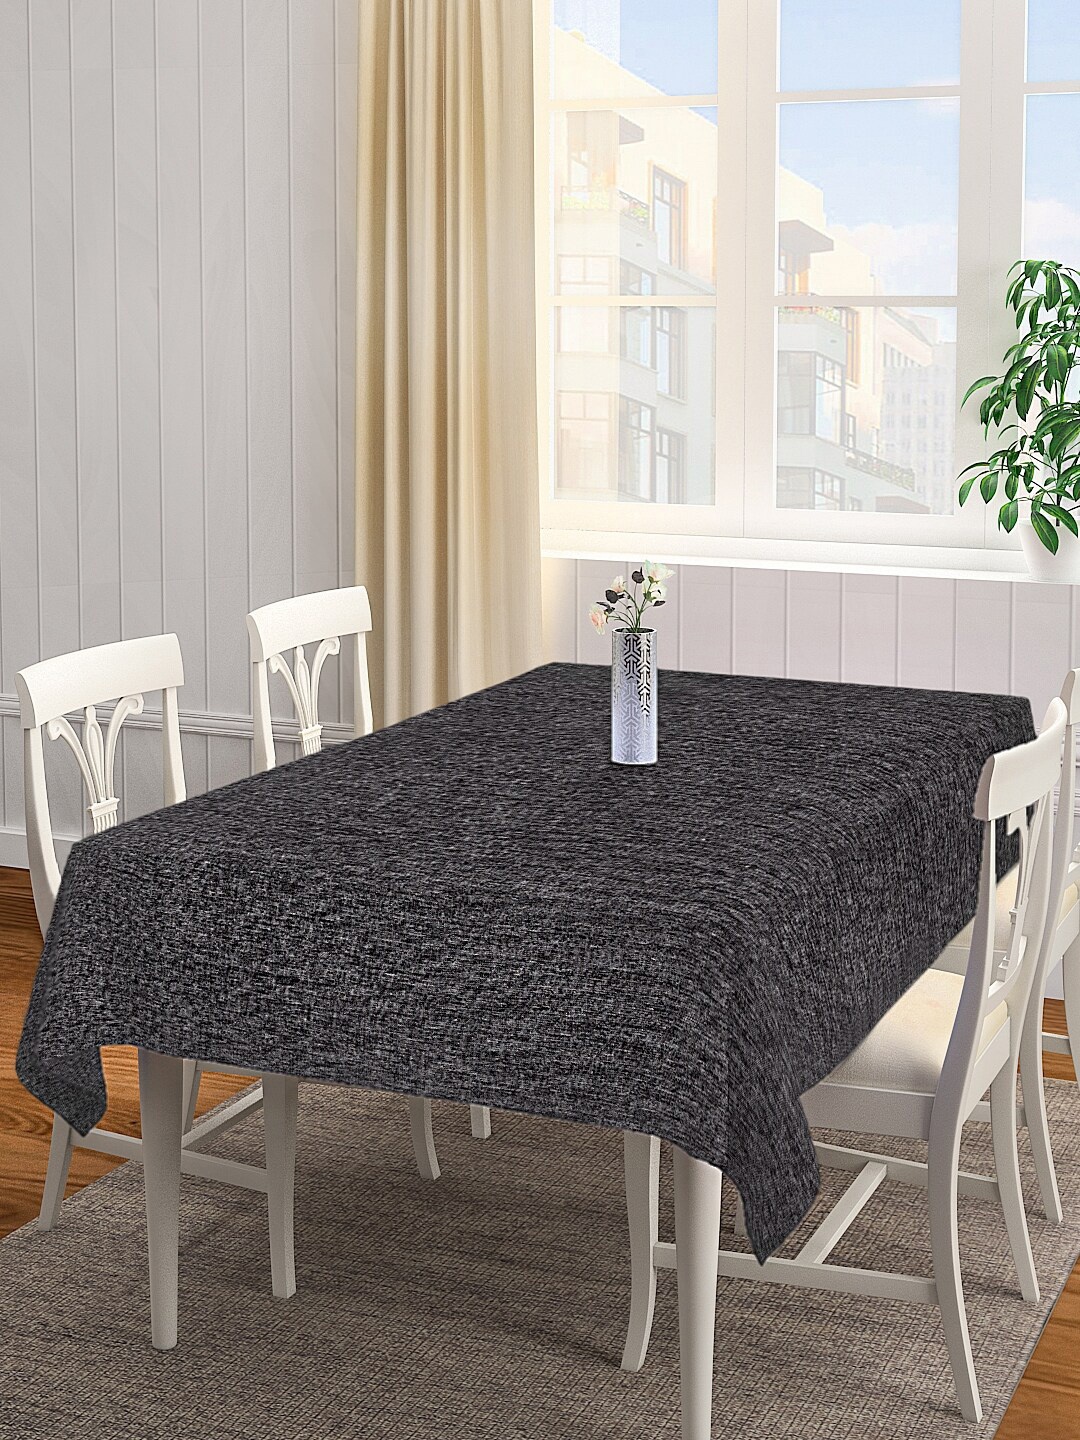 

KLOTTHE Black Woven-Design 6 Seater Rectangular Cotton Table Cover